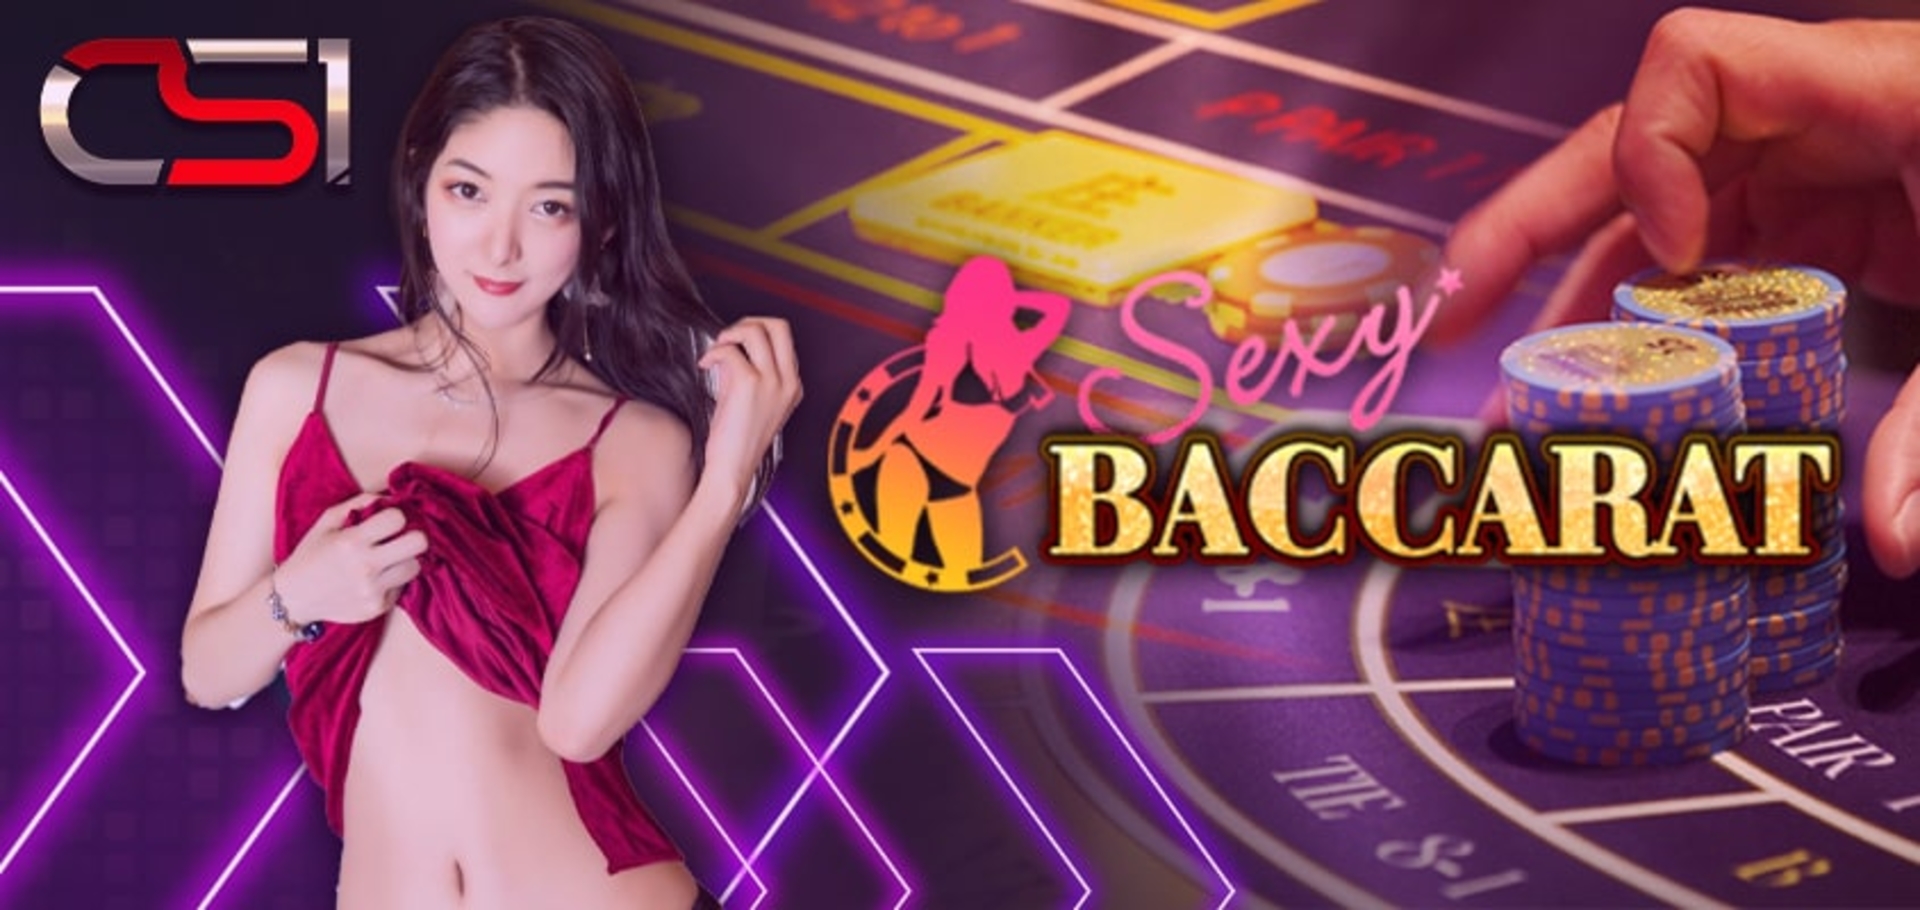 Sexy baccarat สูตรการเดินเงินของเกม พร้อมแนวทาง 2021